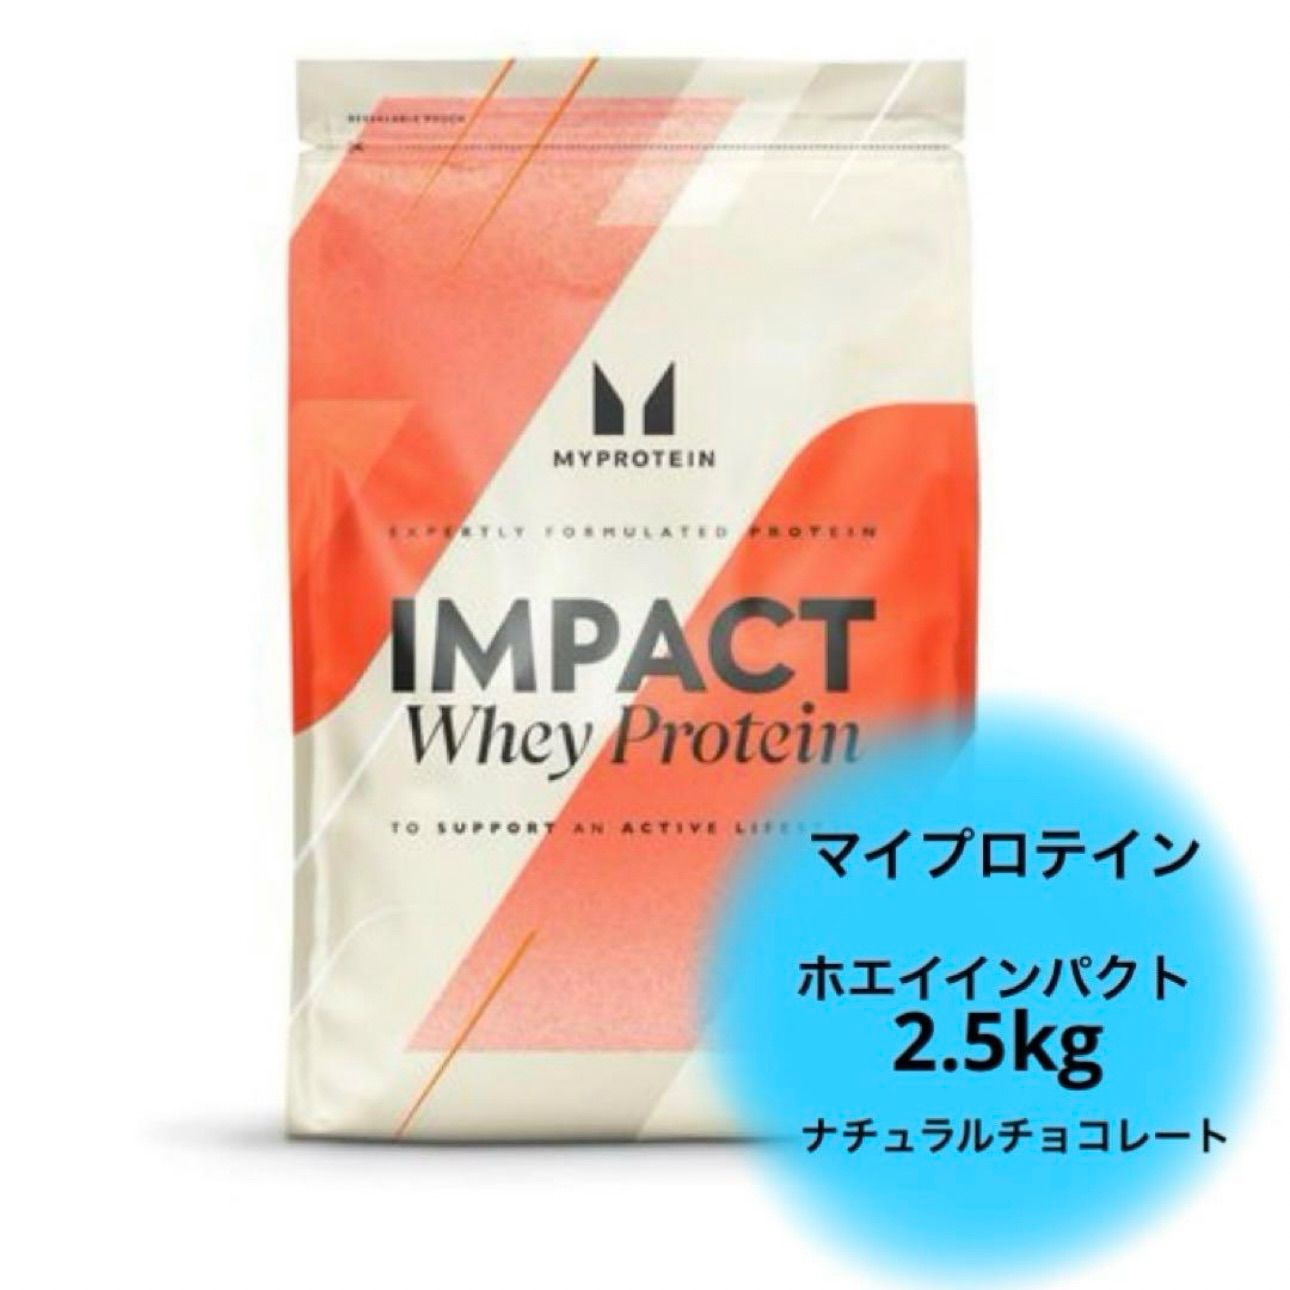 【未開封】マイプロテイン ナチュラルチョコレート 5kg